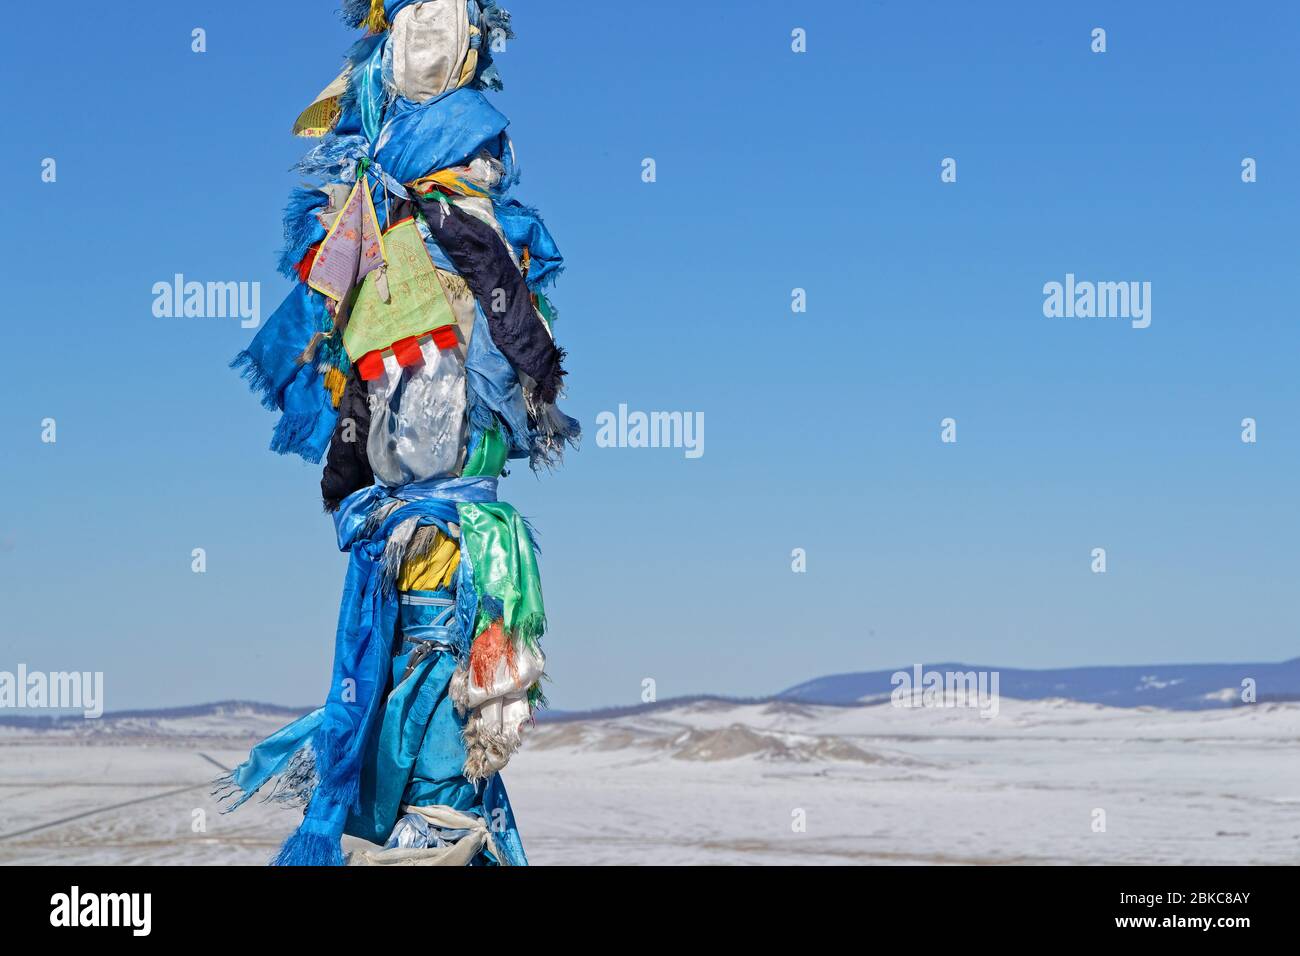 Drapeaux dans le vent. Ovoo sont des tas de pierre sacrées utilisés comme autels ou sanctuaires dans les pratiques religieuses folkloriques mongoles. Banque D'Images